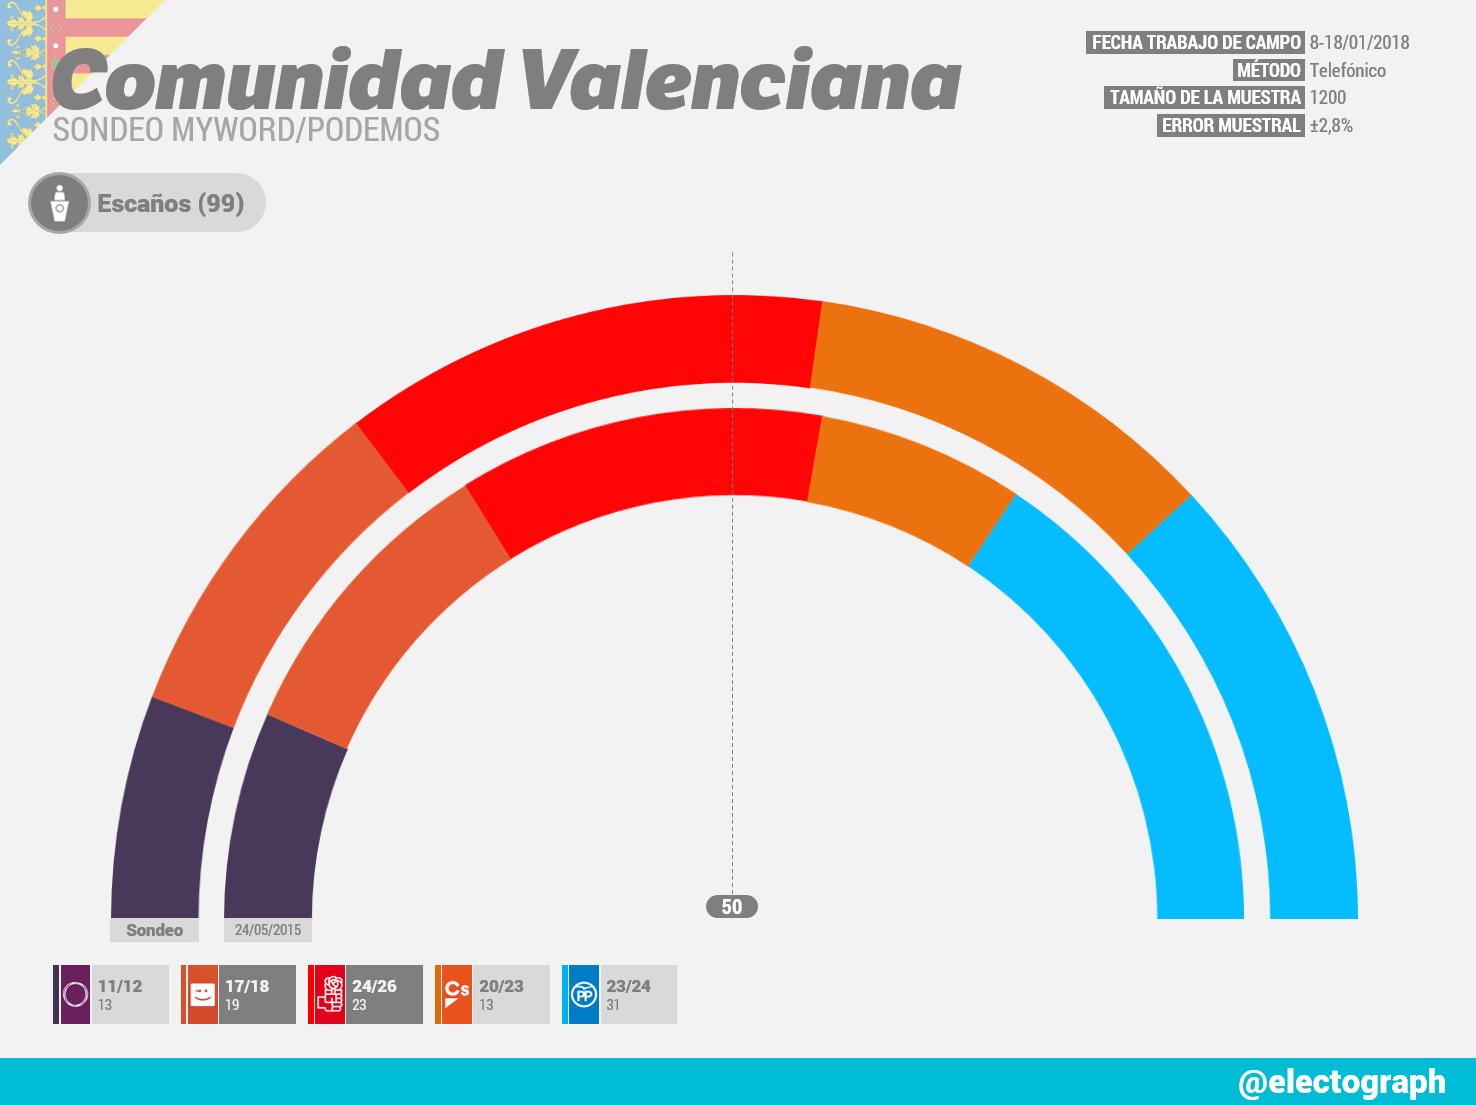 Gráfico de la encuesta para elecciones autonómicas en la Comunidad Valenciana realizada por MyWord para Podemos en enero de 2018